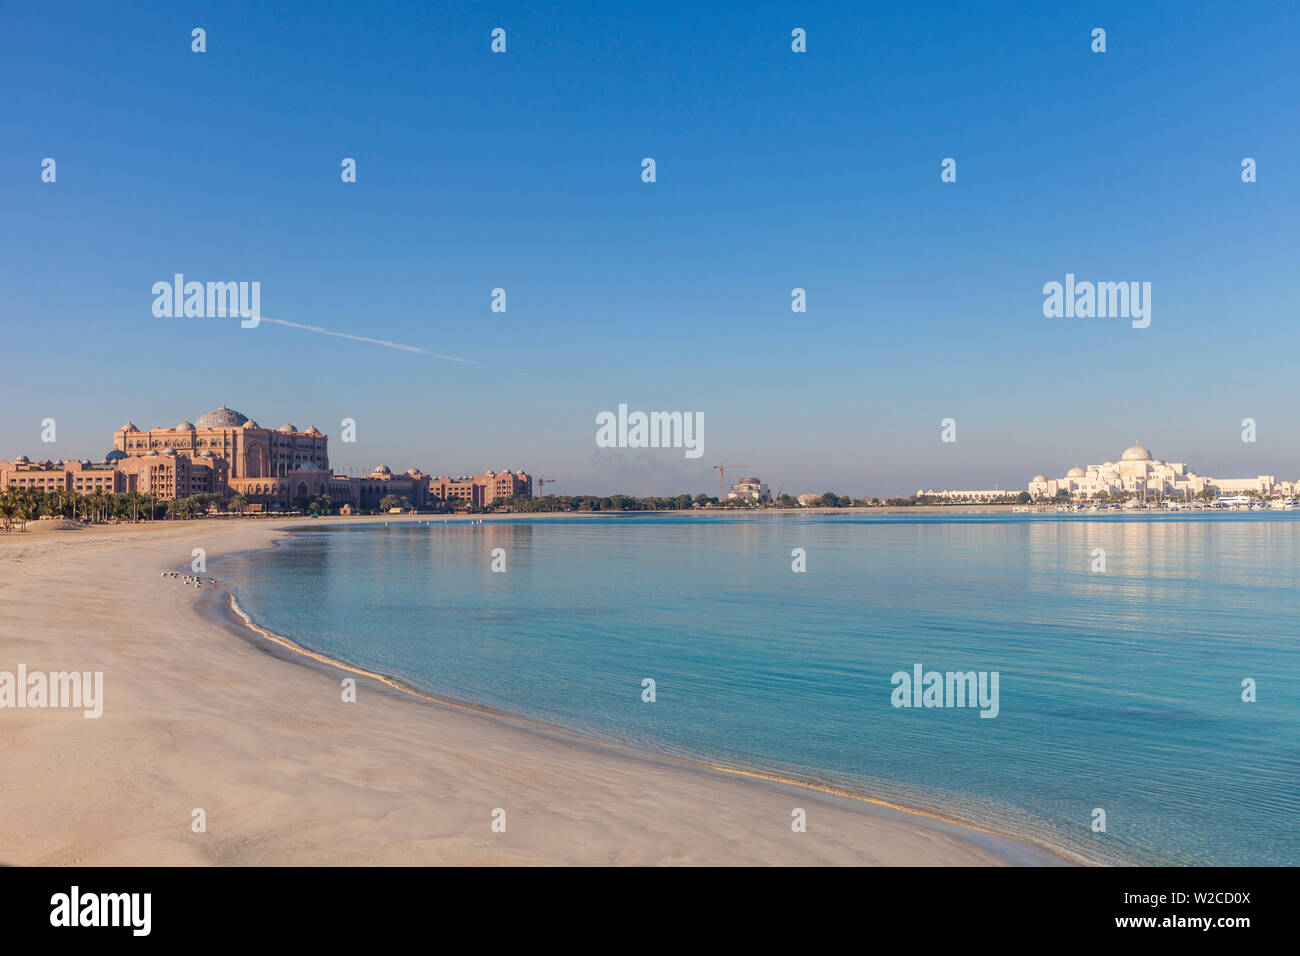 Die Vereinigten Arabischen Emirate, Abu Dhabi, Emirates Palace Hotel und dem Präsidentenpalast Stockfoto